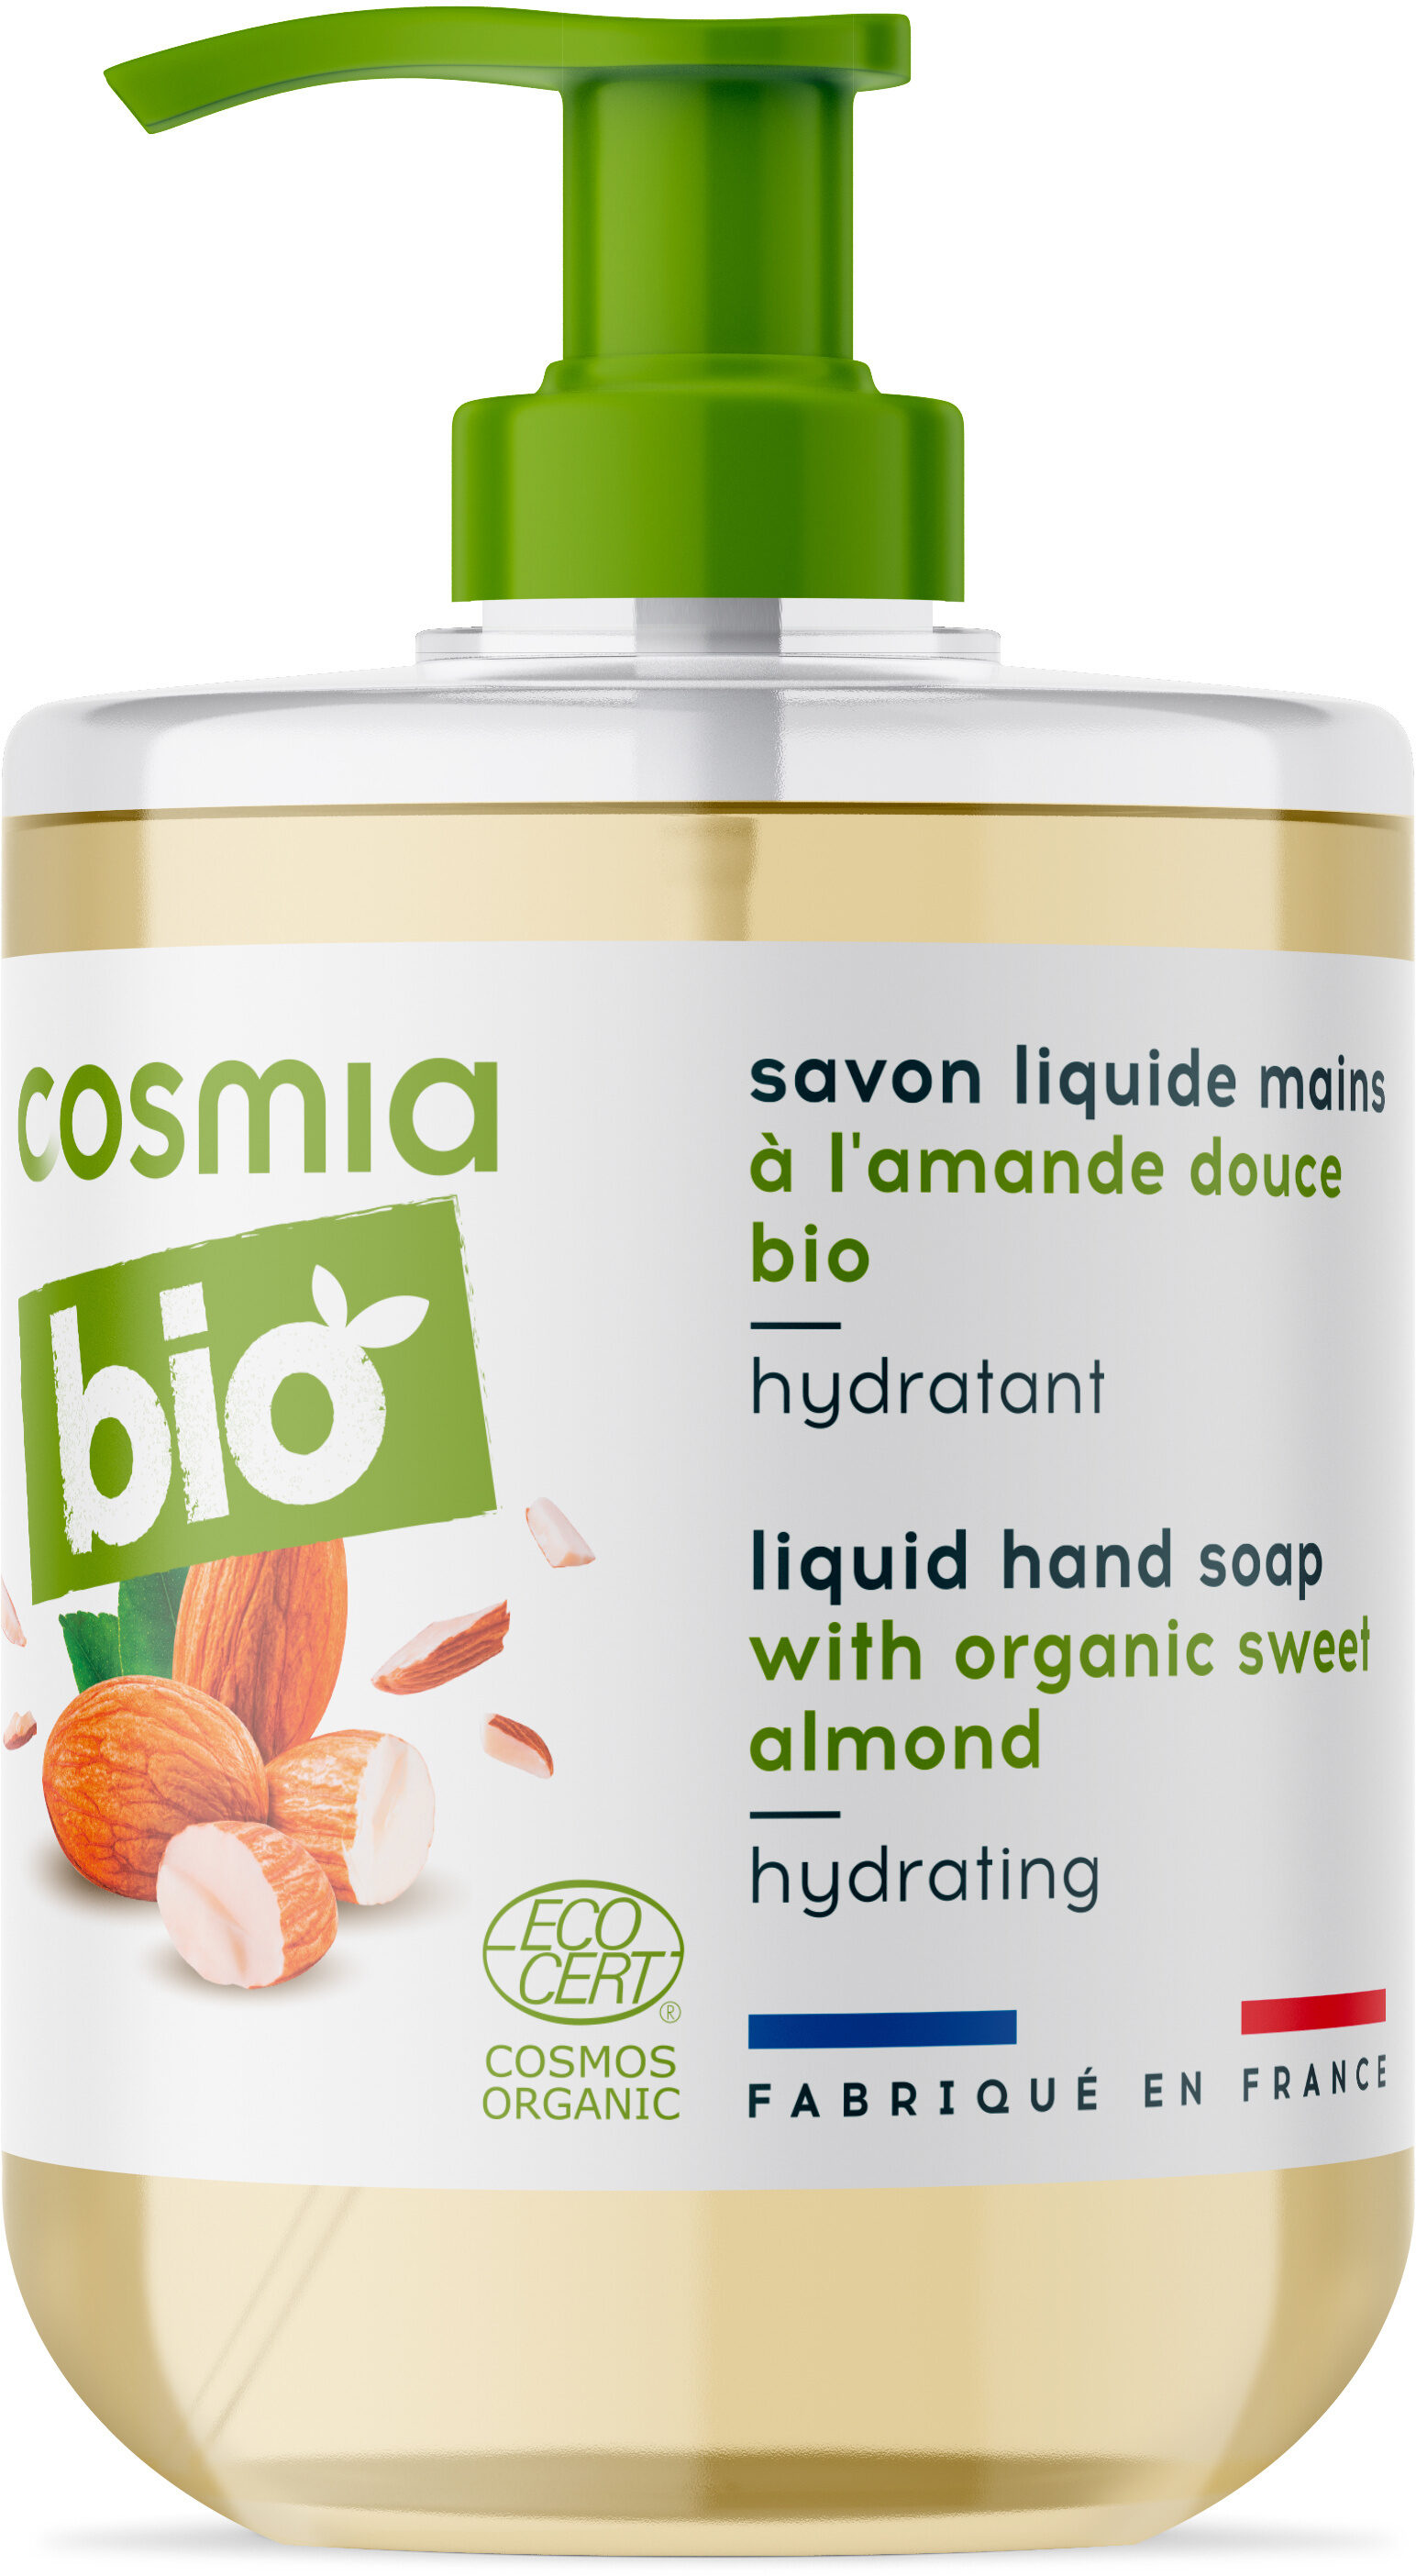 Bio savon liquide mains a l'amande douce bio - Produit - fr